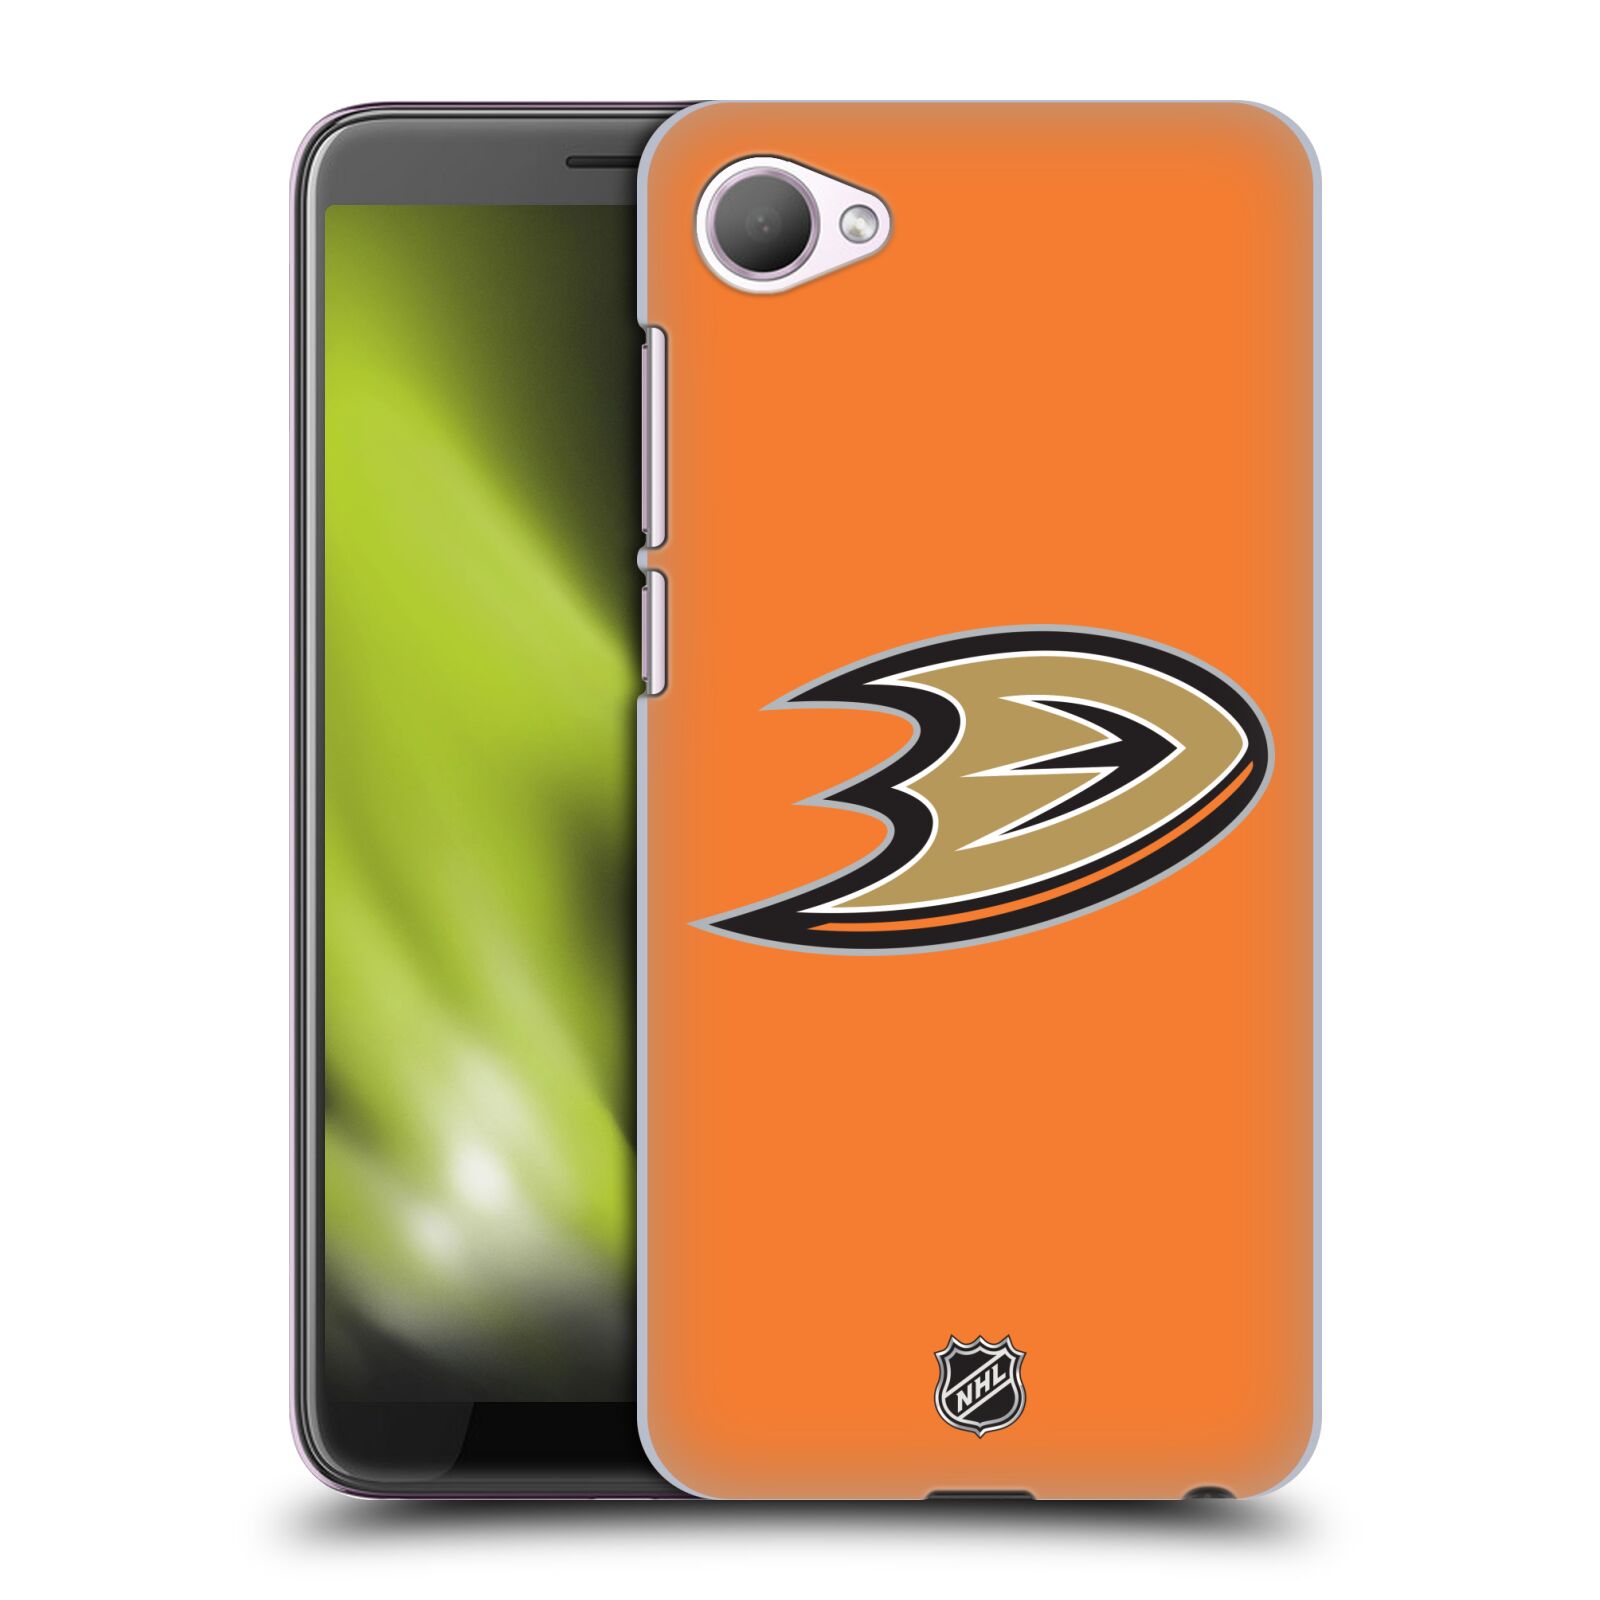 Pouzdro na mobil HTC Desire 12 / Desire 12 DUAL SIM - HEAD CASE - Hokej NHL - Anaheim Ducks - Oranžové pozadí